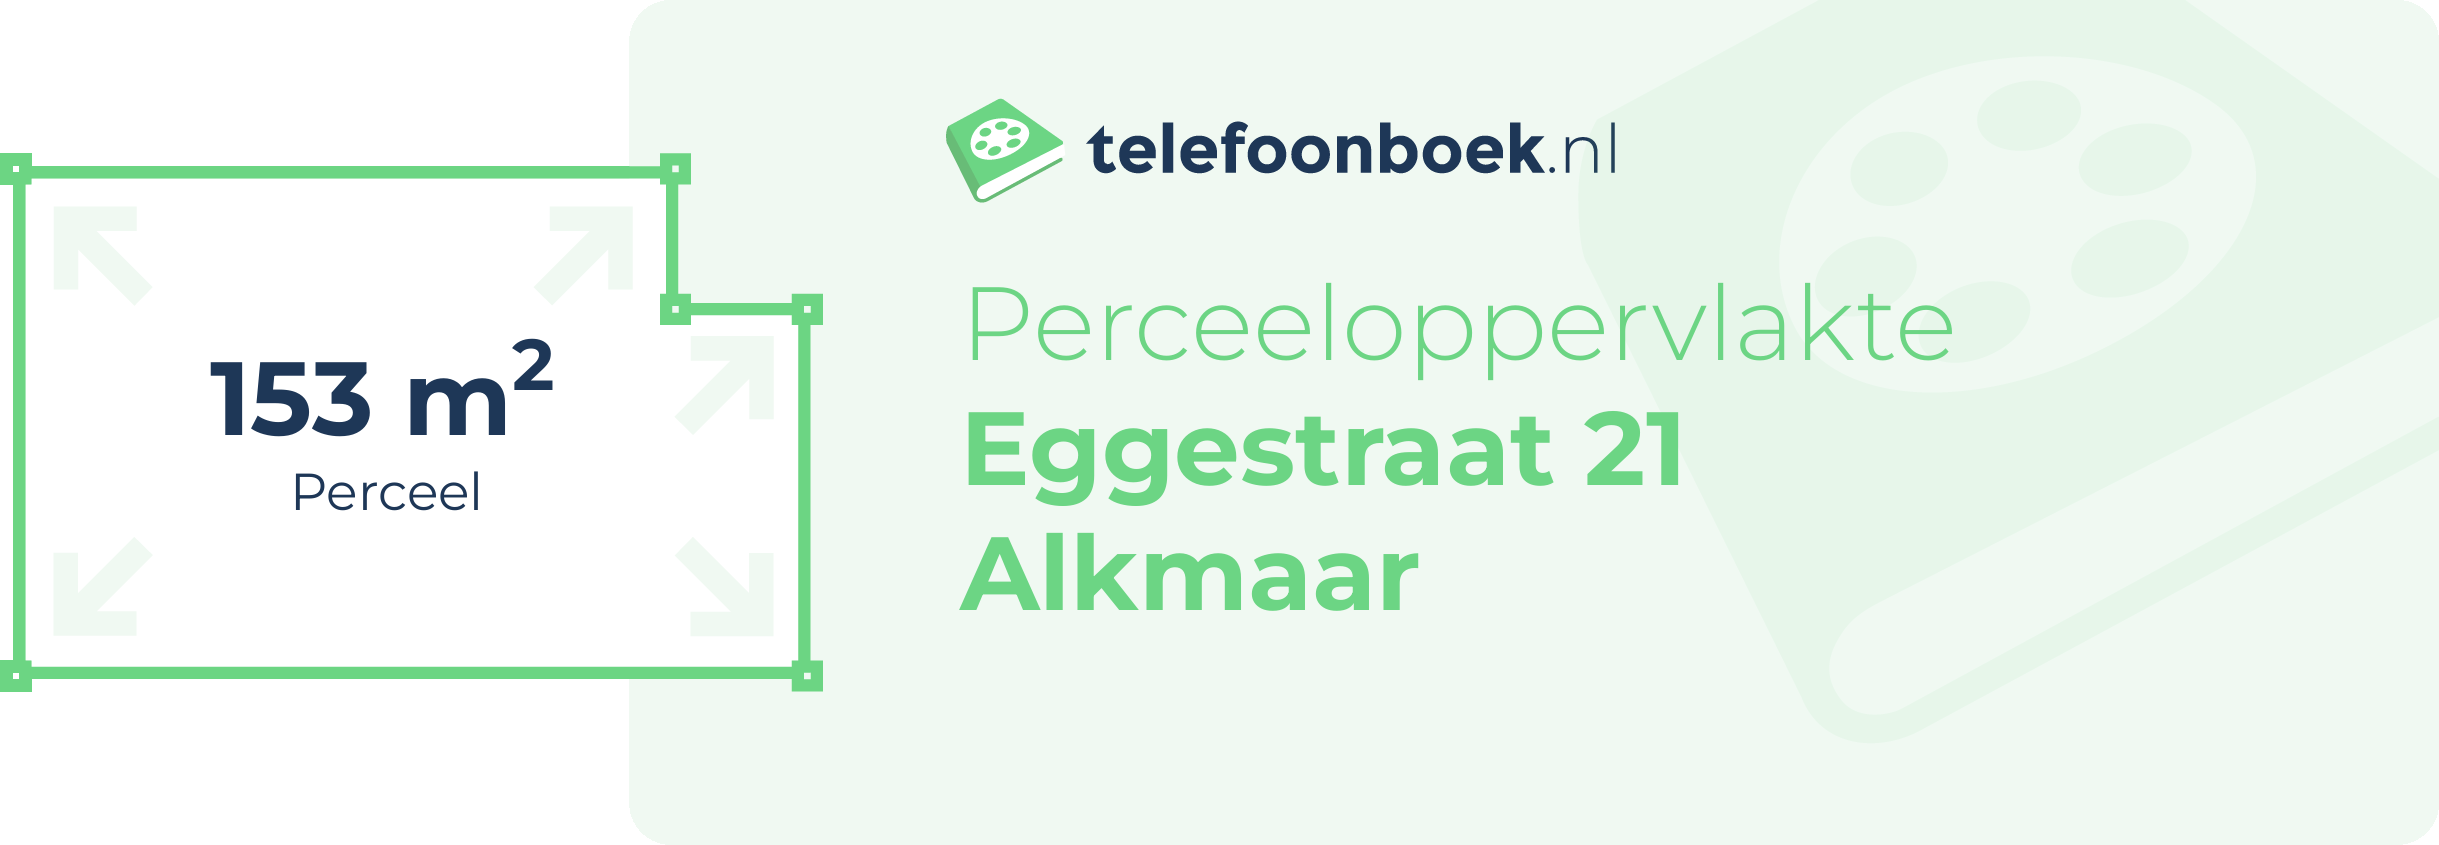 Perceeloppervlakte Eggestraat 21 Alkmaar